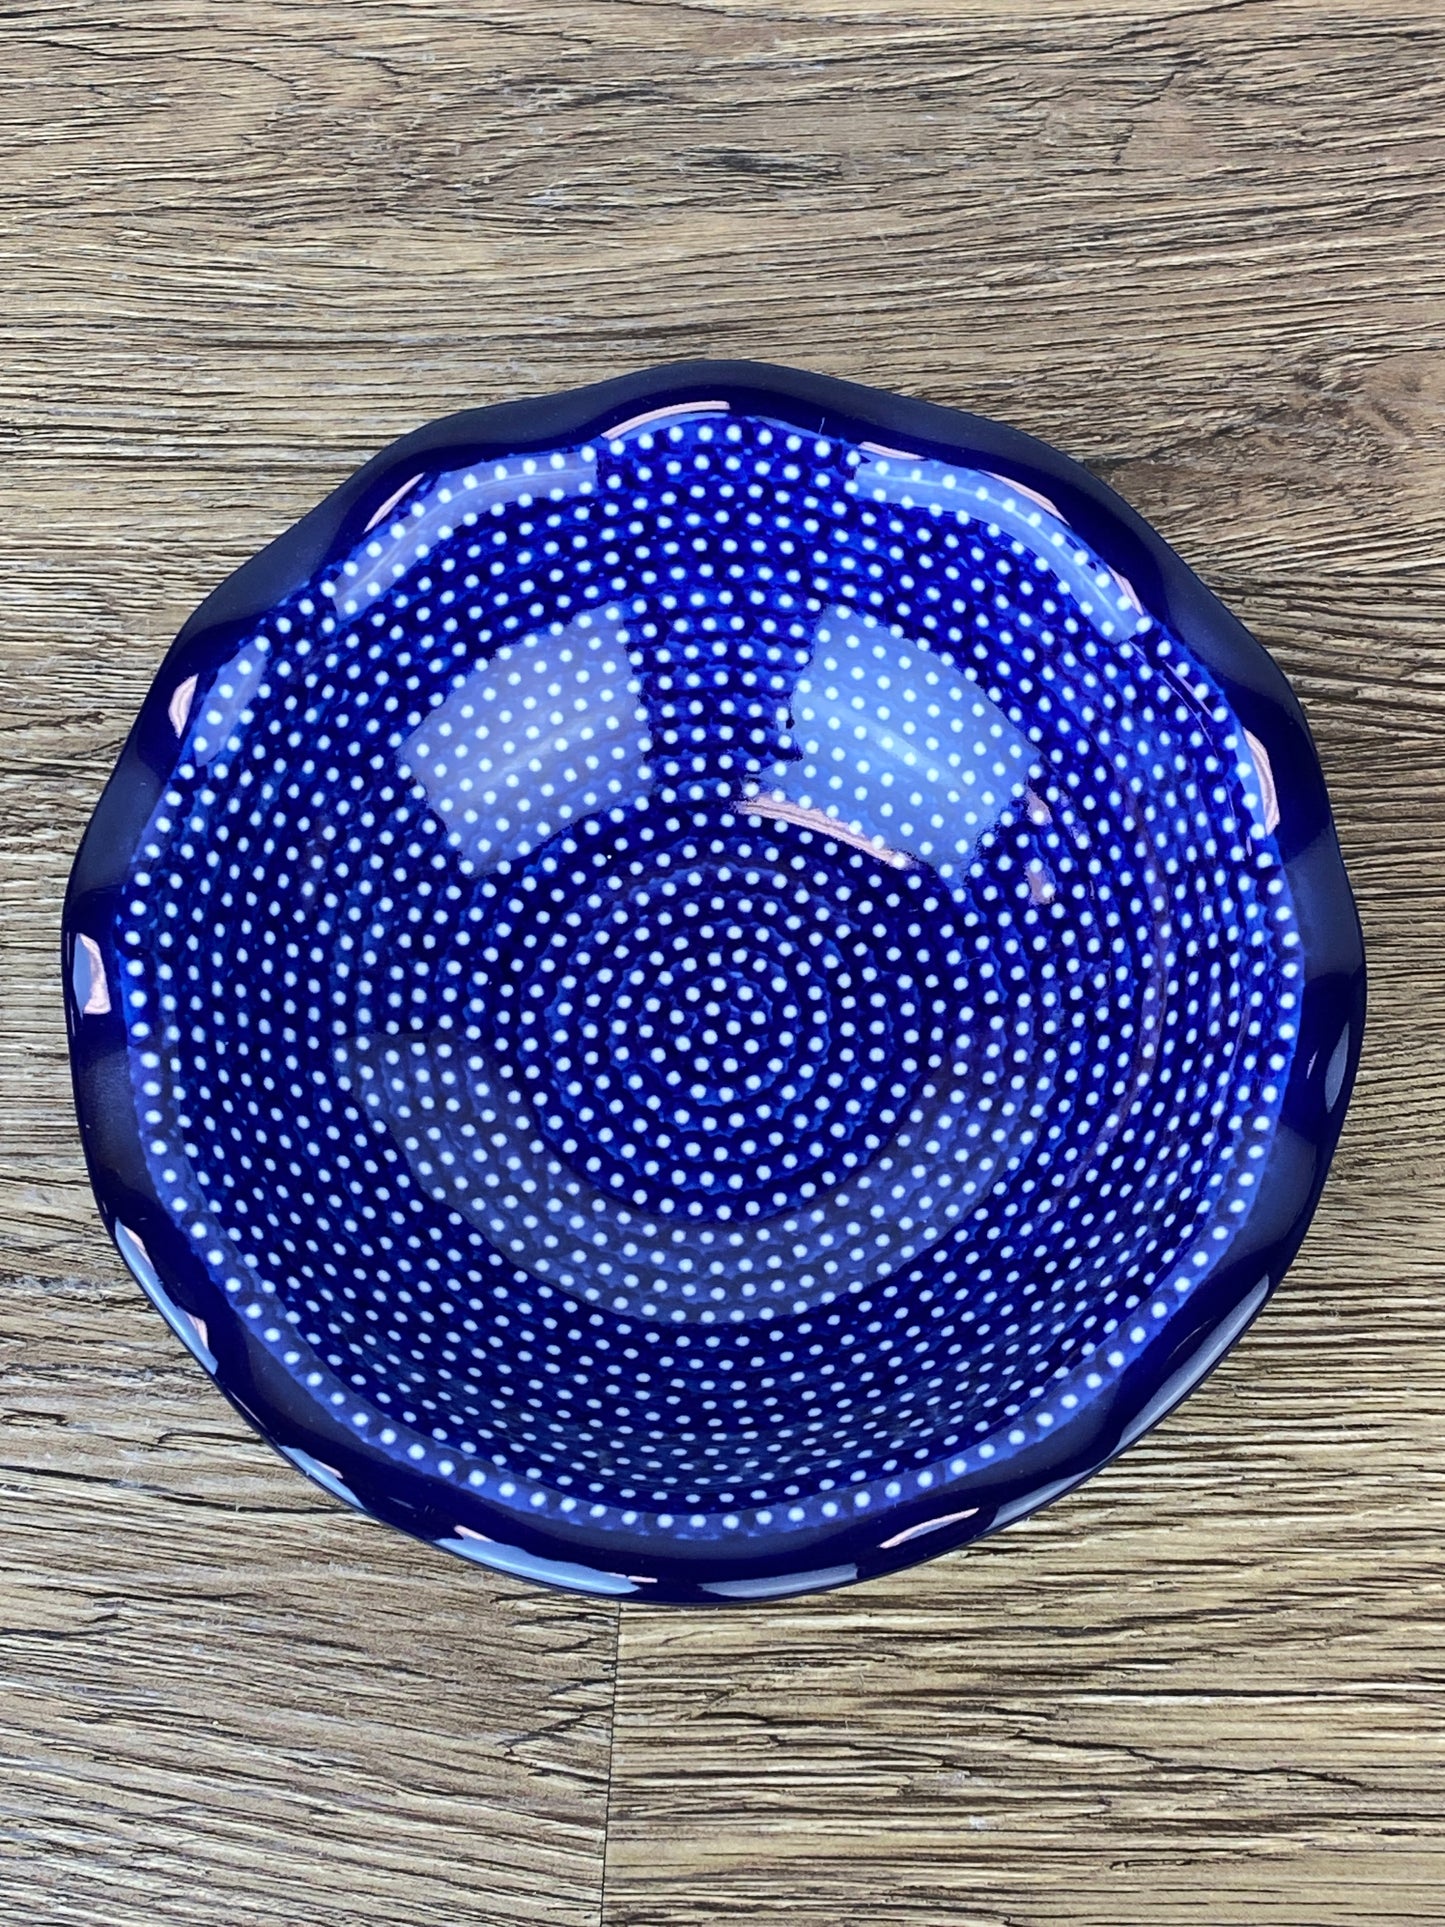 Unikat Medium Ruffled Bowl - Shape 625 - Pattern U1123